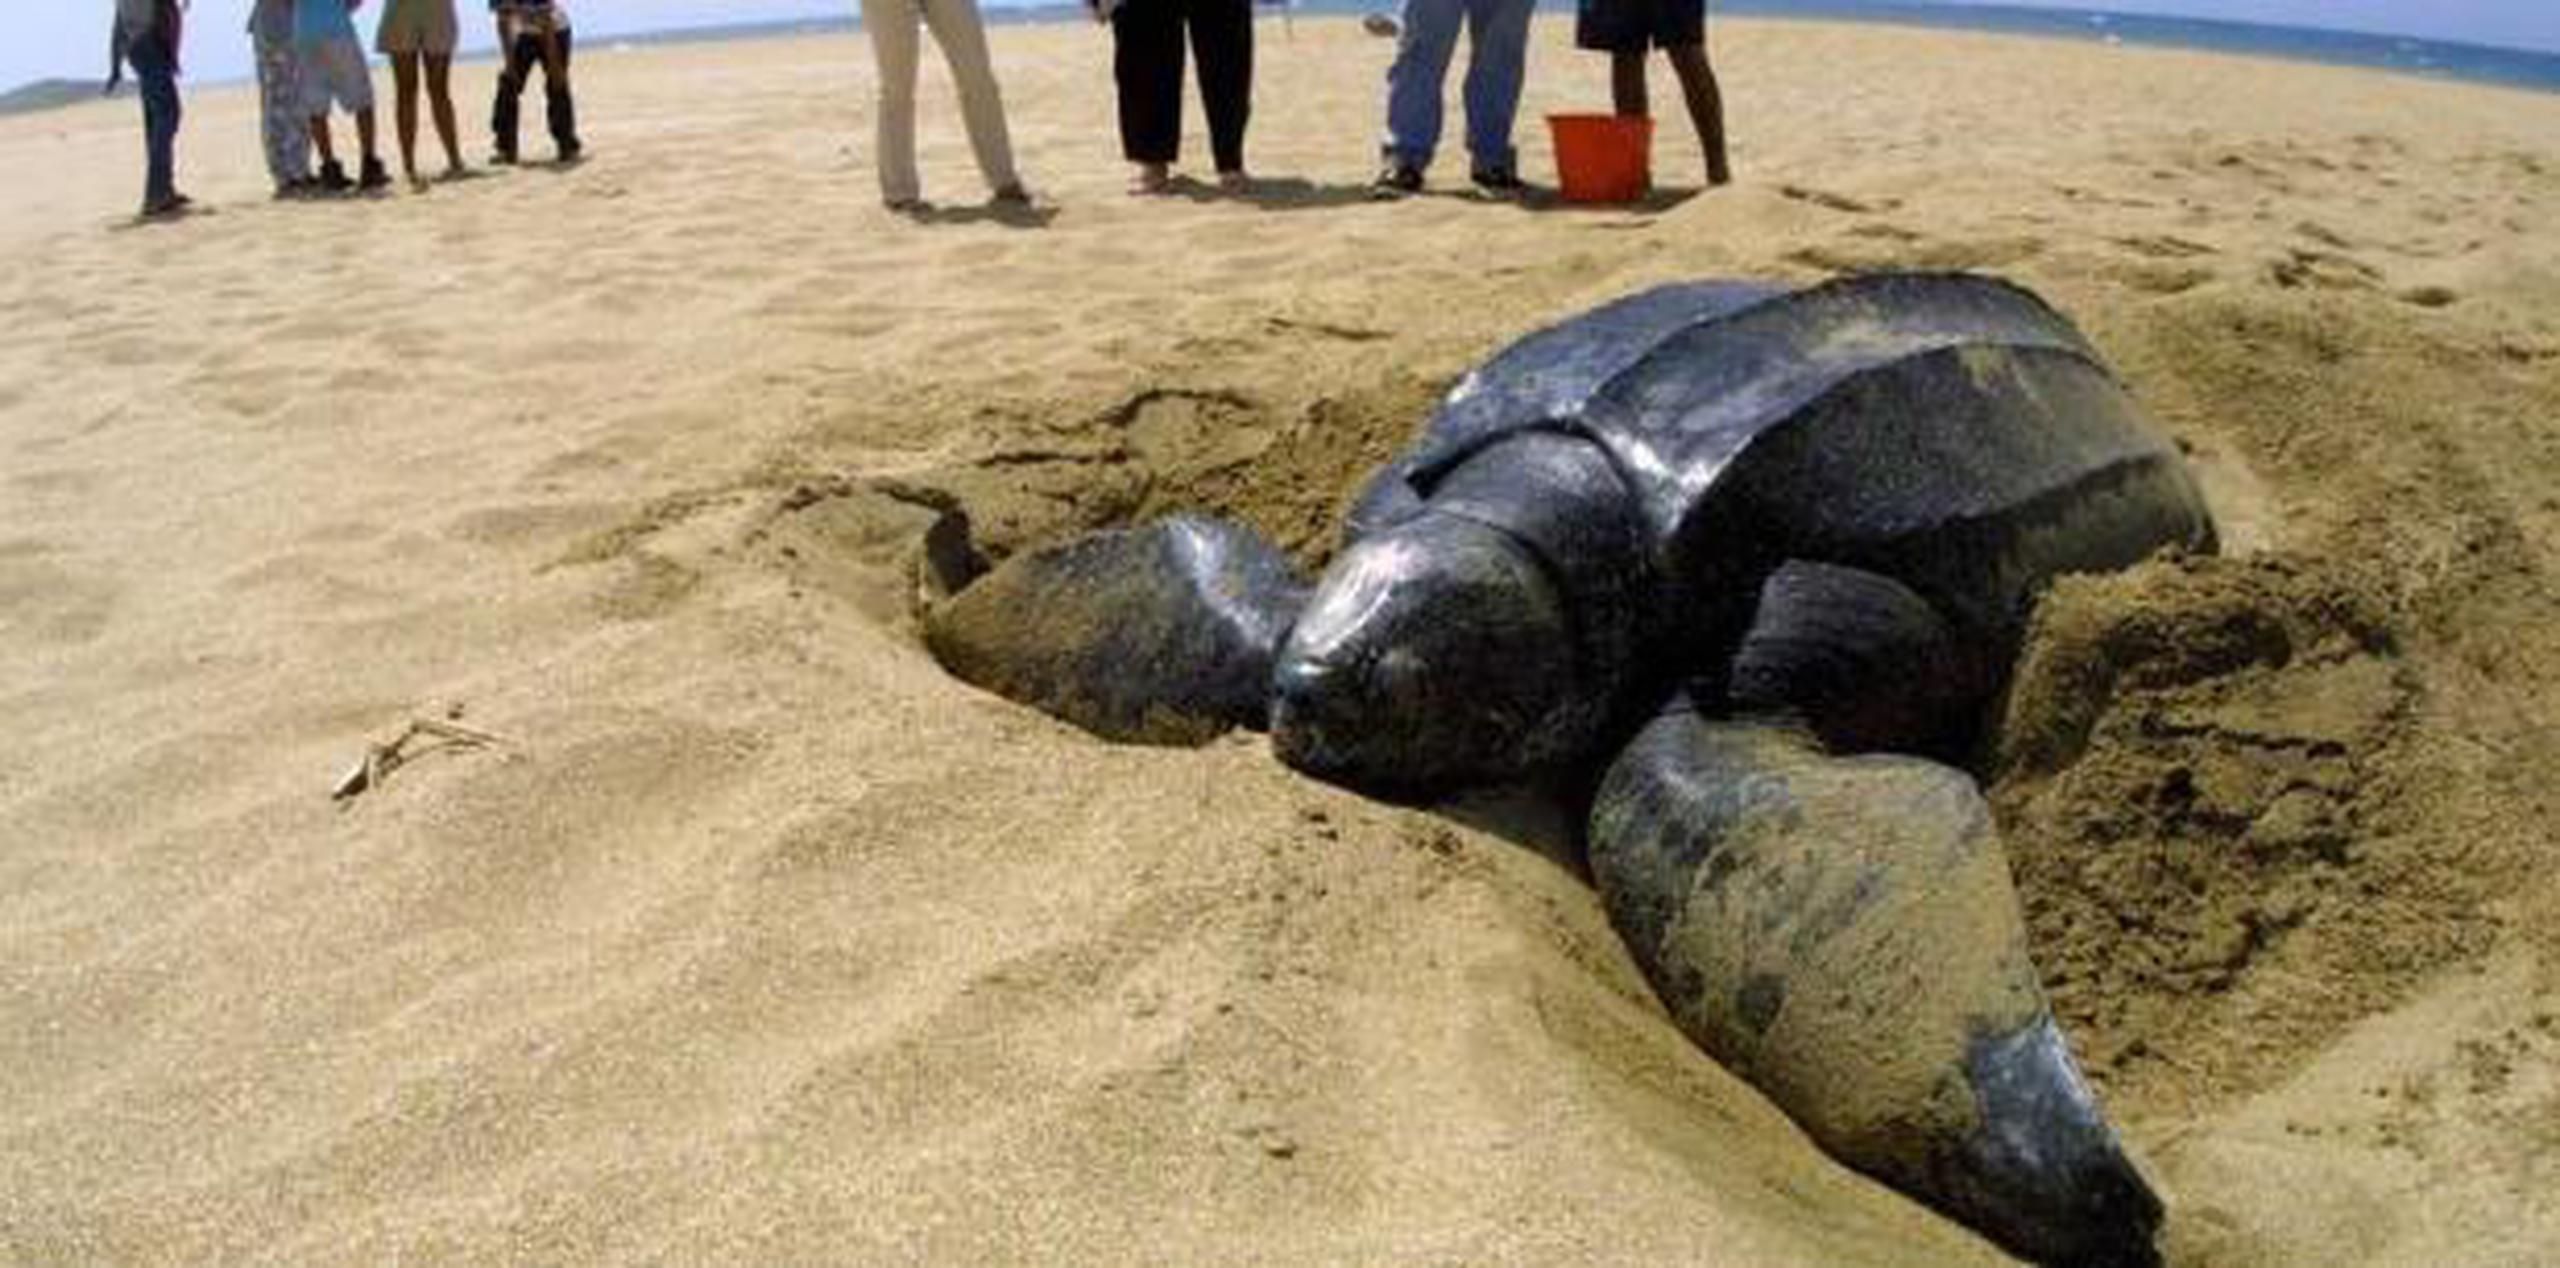 Uno de los problemas que tienen las tortugas es que no consiguen alimento y son perjudicadas por la contaminación de plástico. (Archivo)